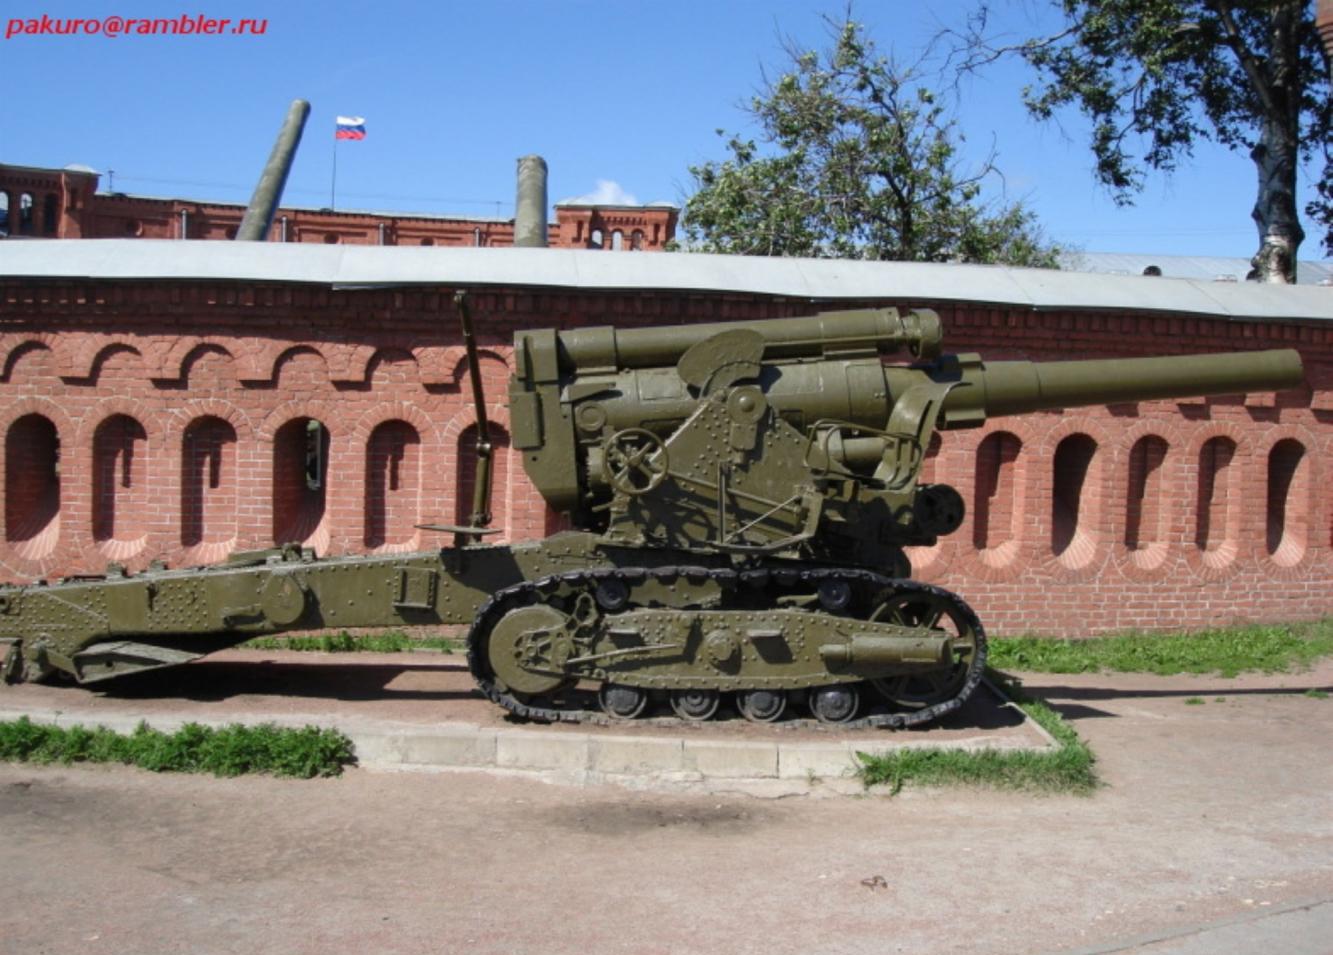 压死德国的最后一根稻草, 二战苏联最强悍的火炮